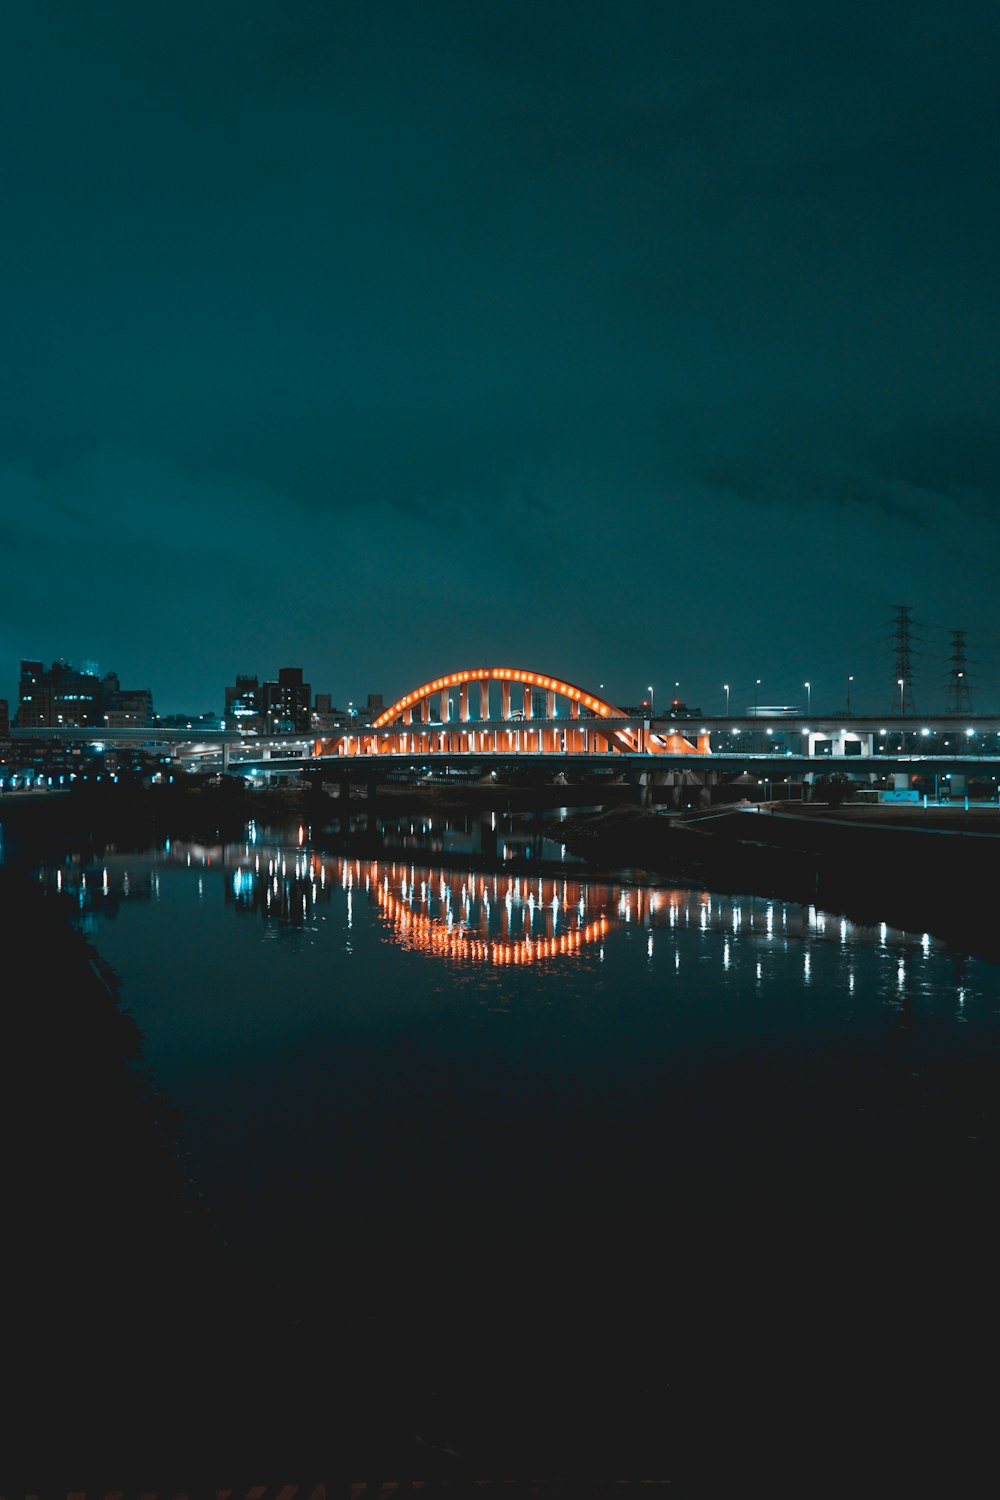 夜間の水上の橋